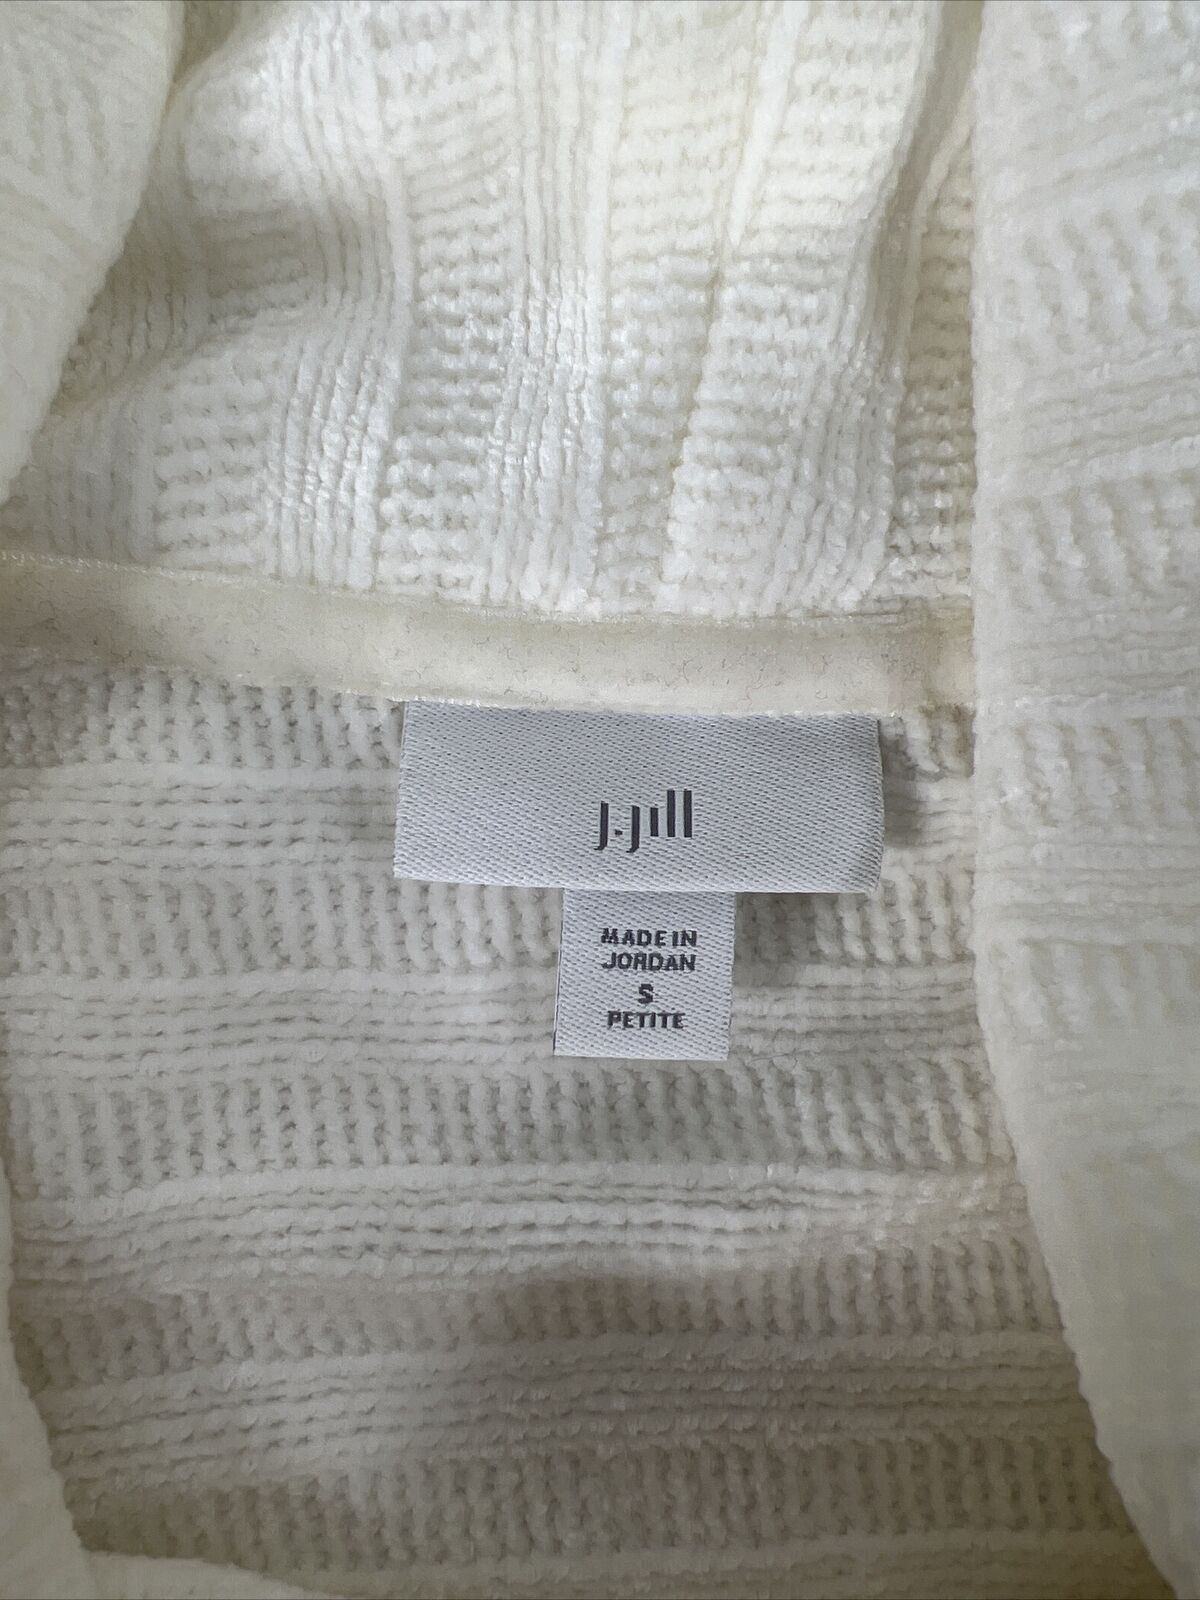 J. Jill Suéter suave de manga larga con cuello vuelto y color marfil/blanco para mujer - Petite S